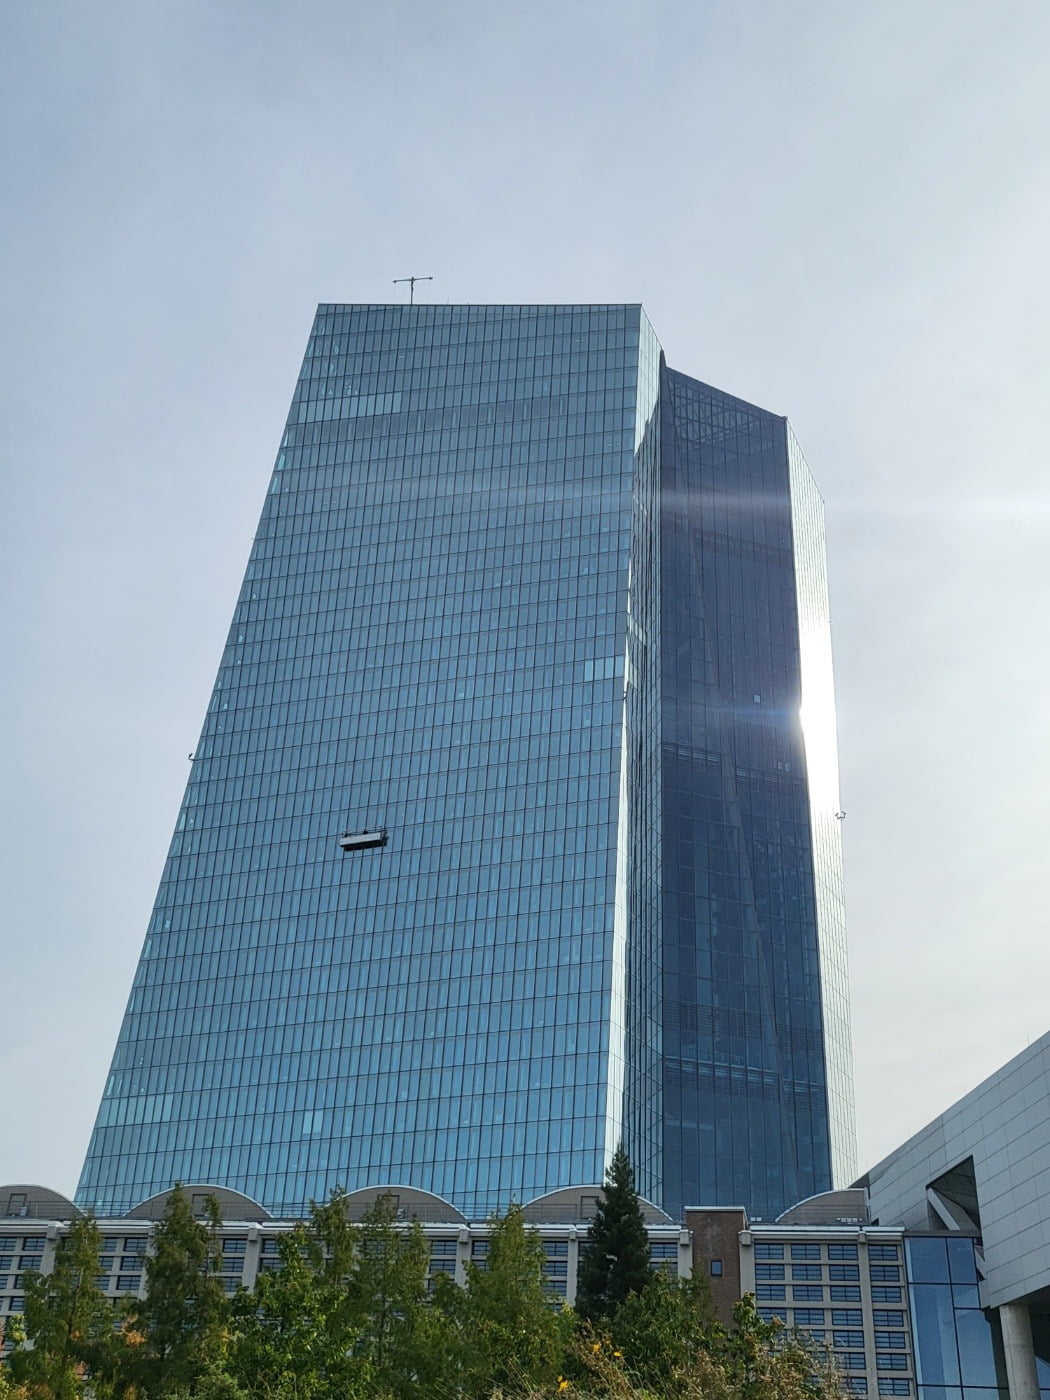 프랑크푸르트 유럽중앙은행(ECB) 건물. /장서우 기자